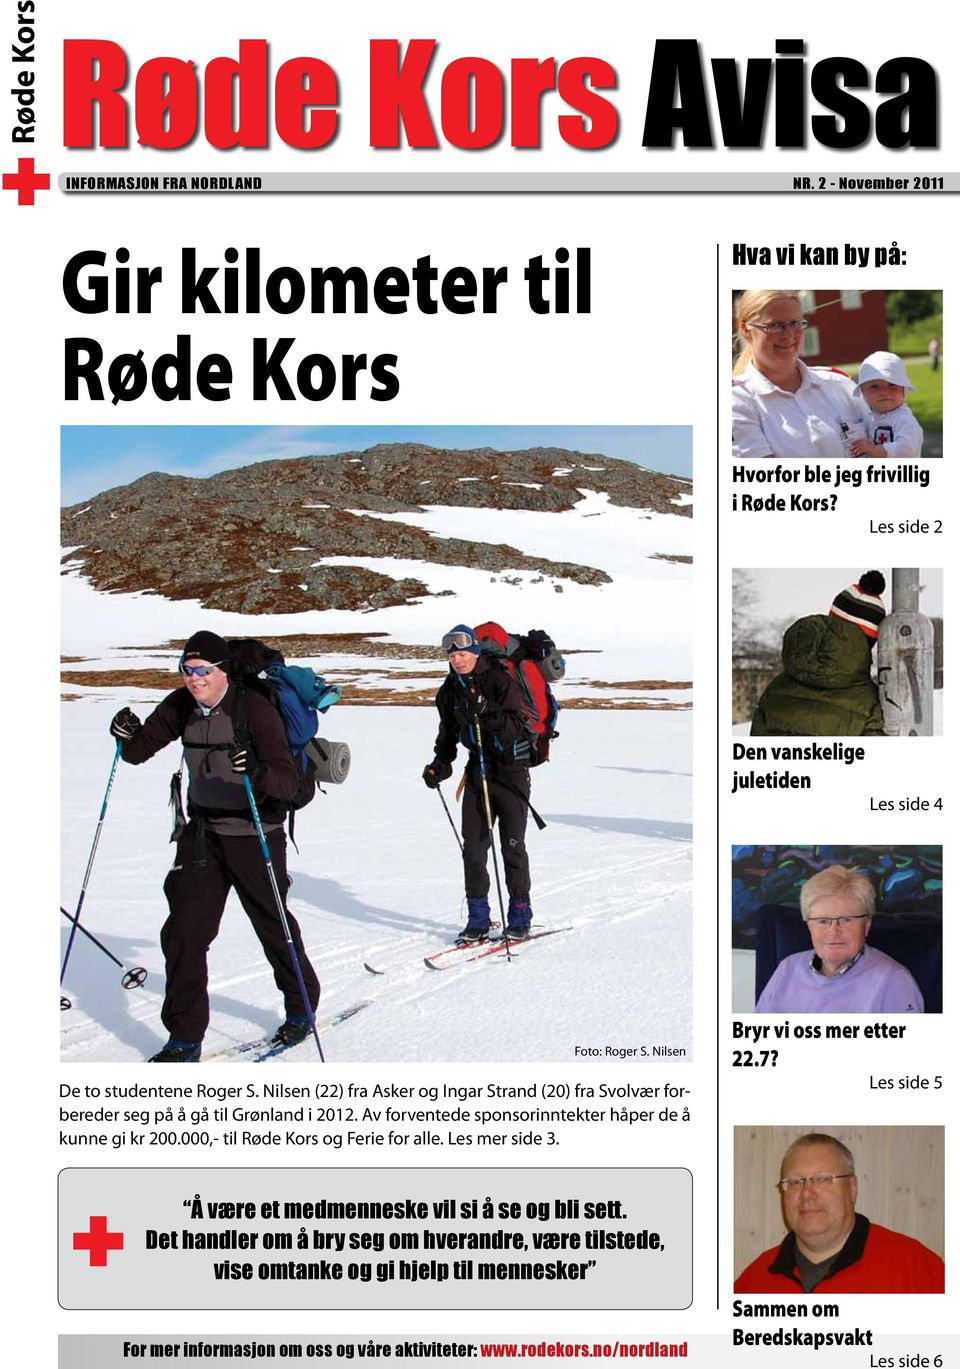 Nilsen (22) fra Asker og Ingar Strand (20) fra Svolvær forbereder seg på å gå til Grønland i 2012. Av forventede sponsorinntekter håper de å kunne gi kr 200.